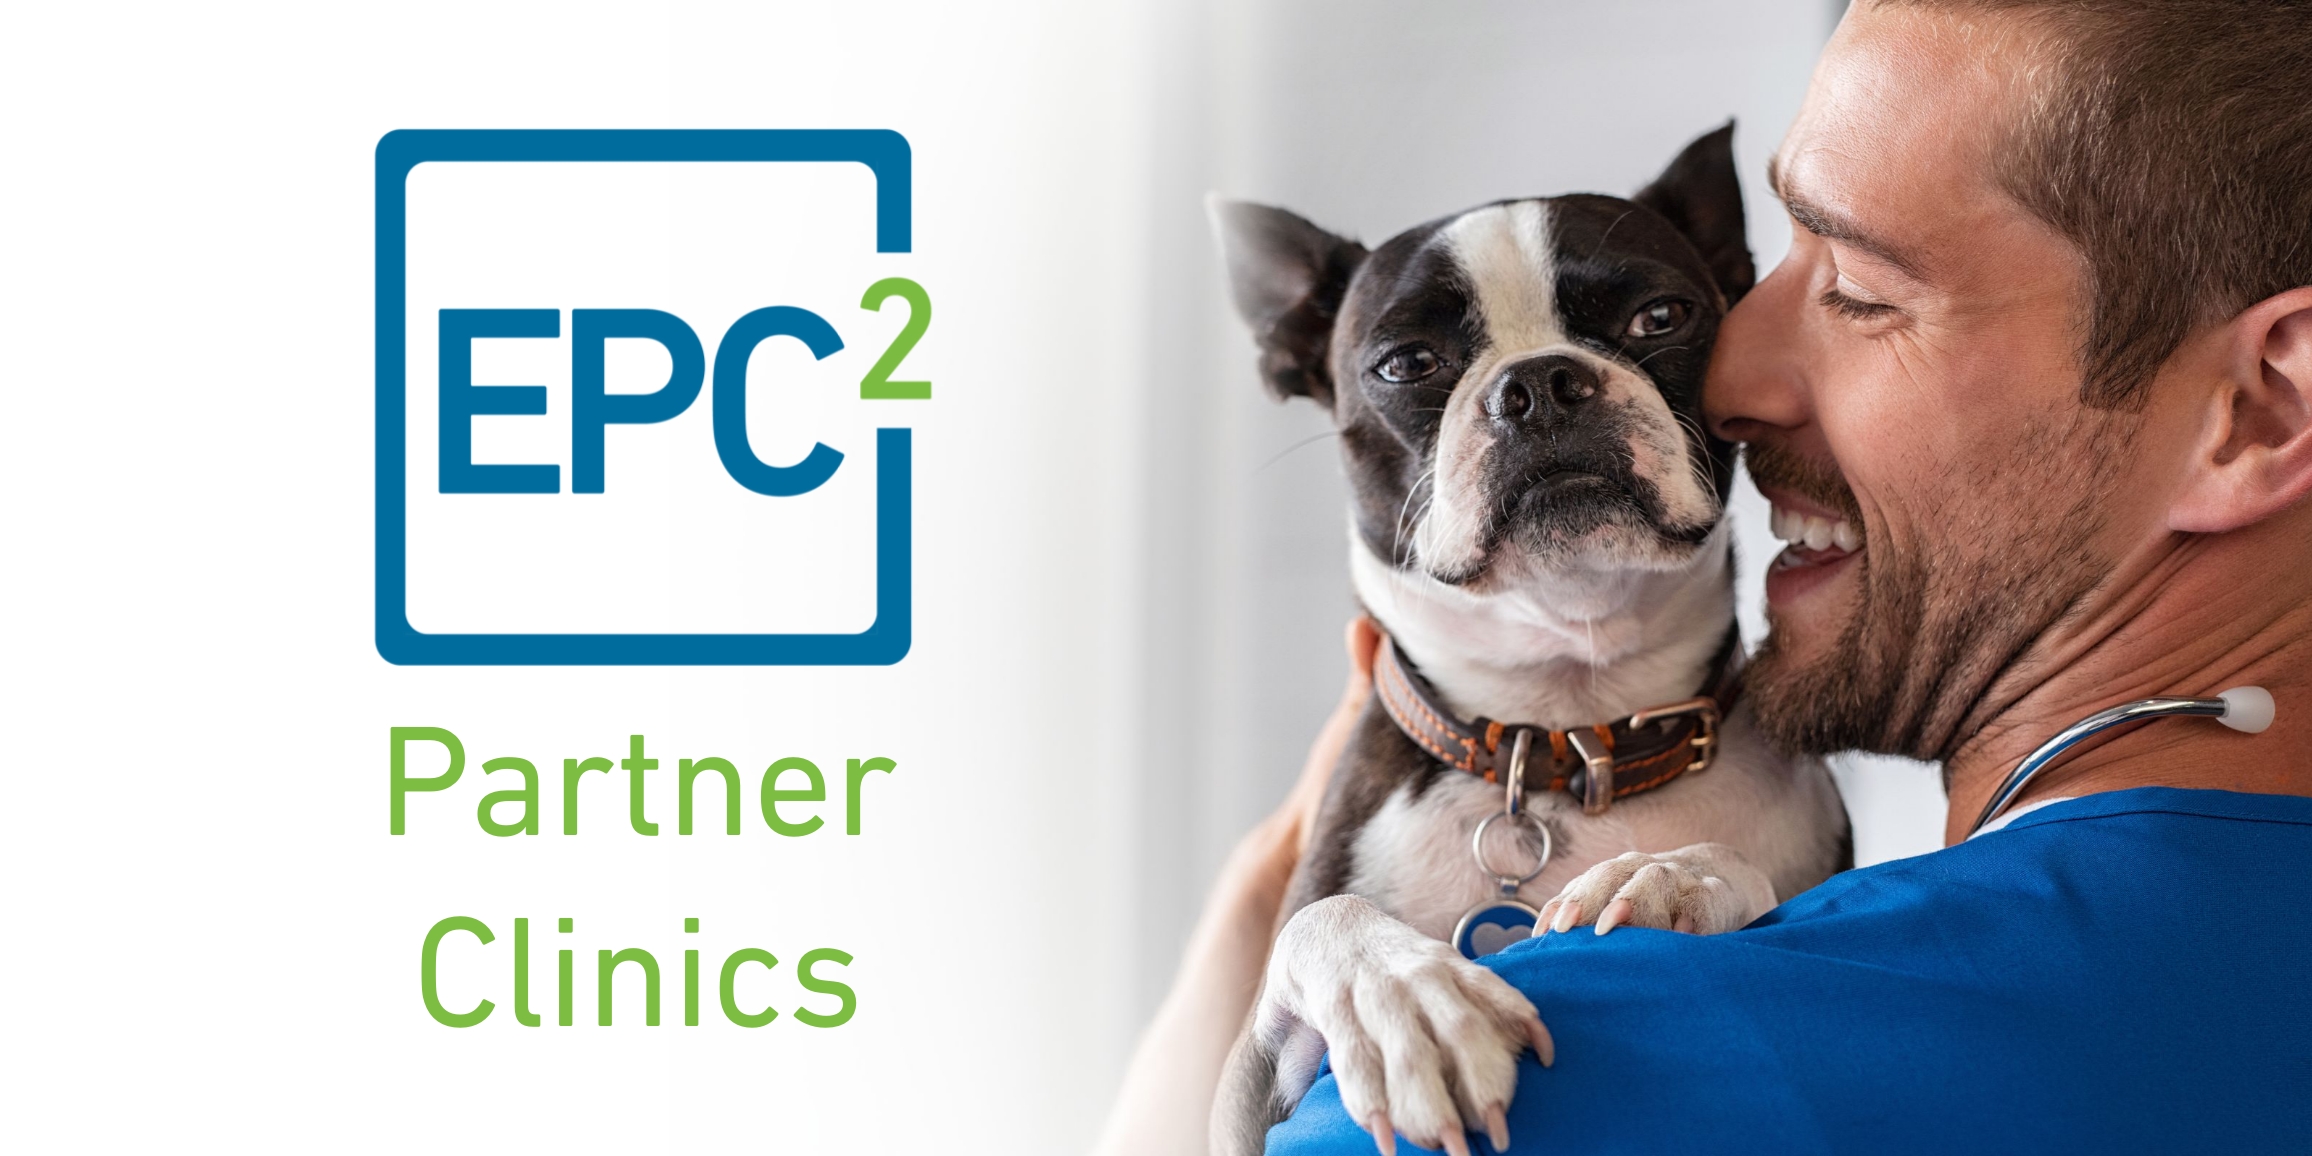 Essentials PetCare presenta clínicas asociadas de EPC² para hospitales veterinarios y DVM en VMX 2022 en Orlando